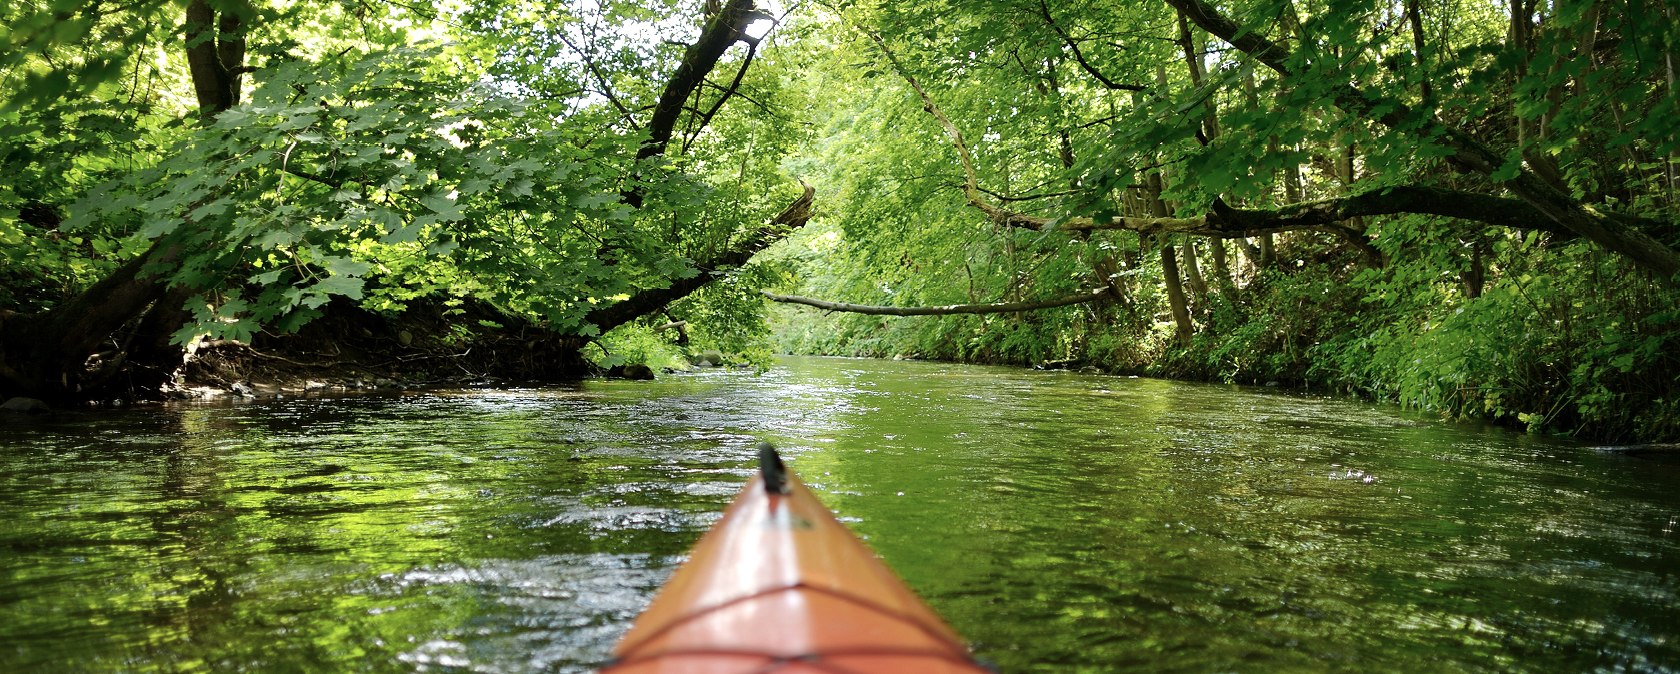 Ein besonderes Erlebnis ist das Befahren der Rur mit dem Kanu - ein ganz anderer Blickwinkel!, © fotolia.de